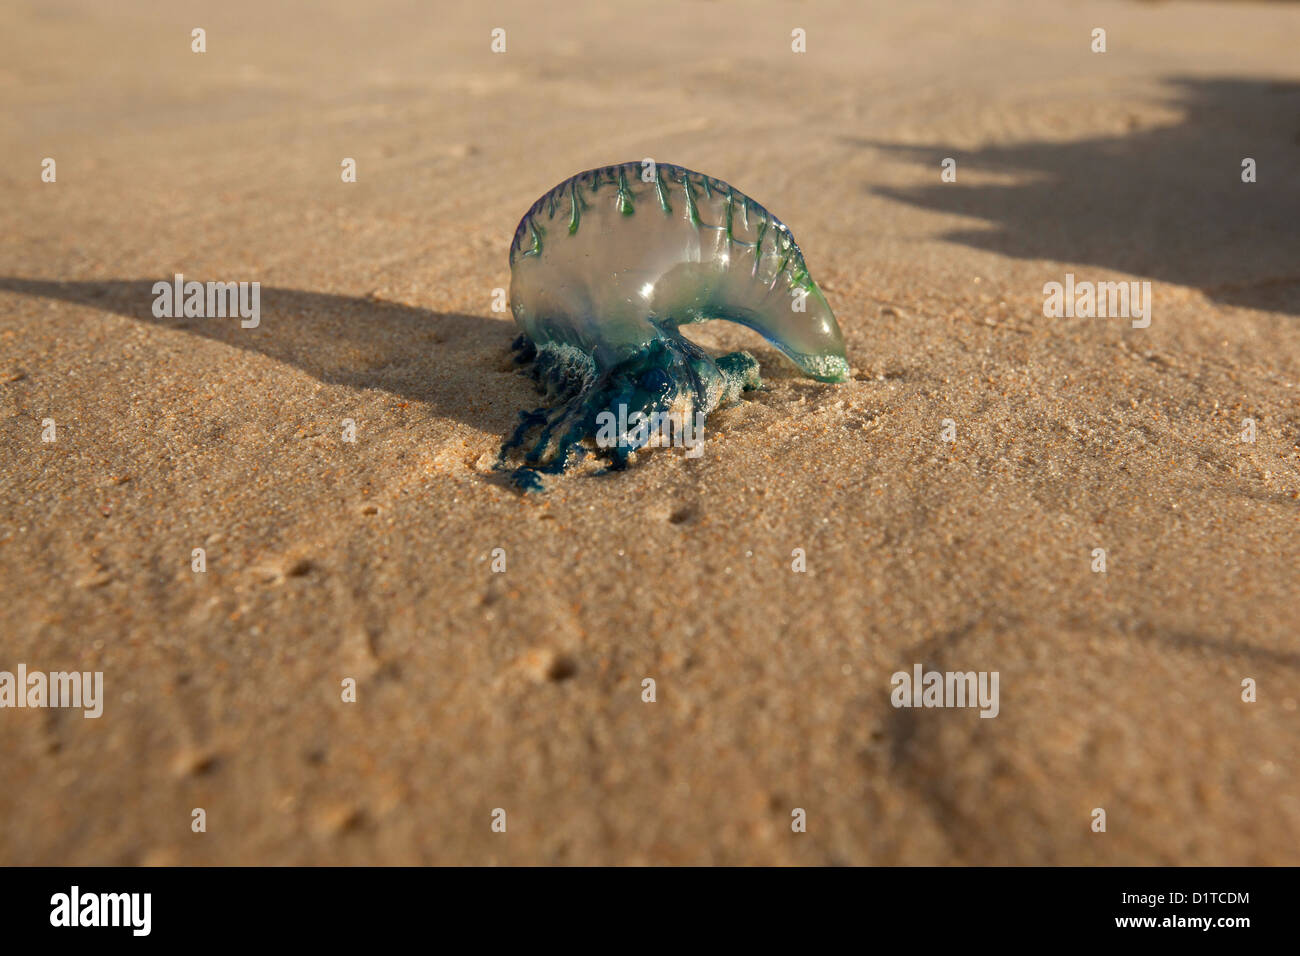 Un Bluebottle, o uomo portoghese O' guerra, si è incagliata su una spiaggia. Foto Stock